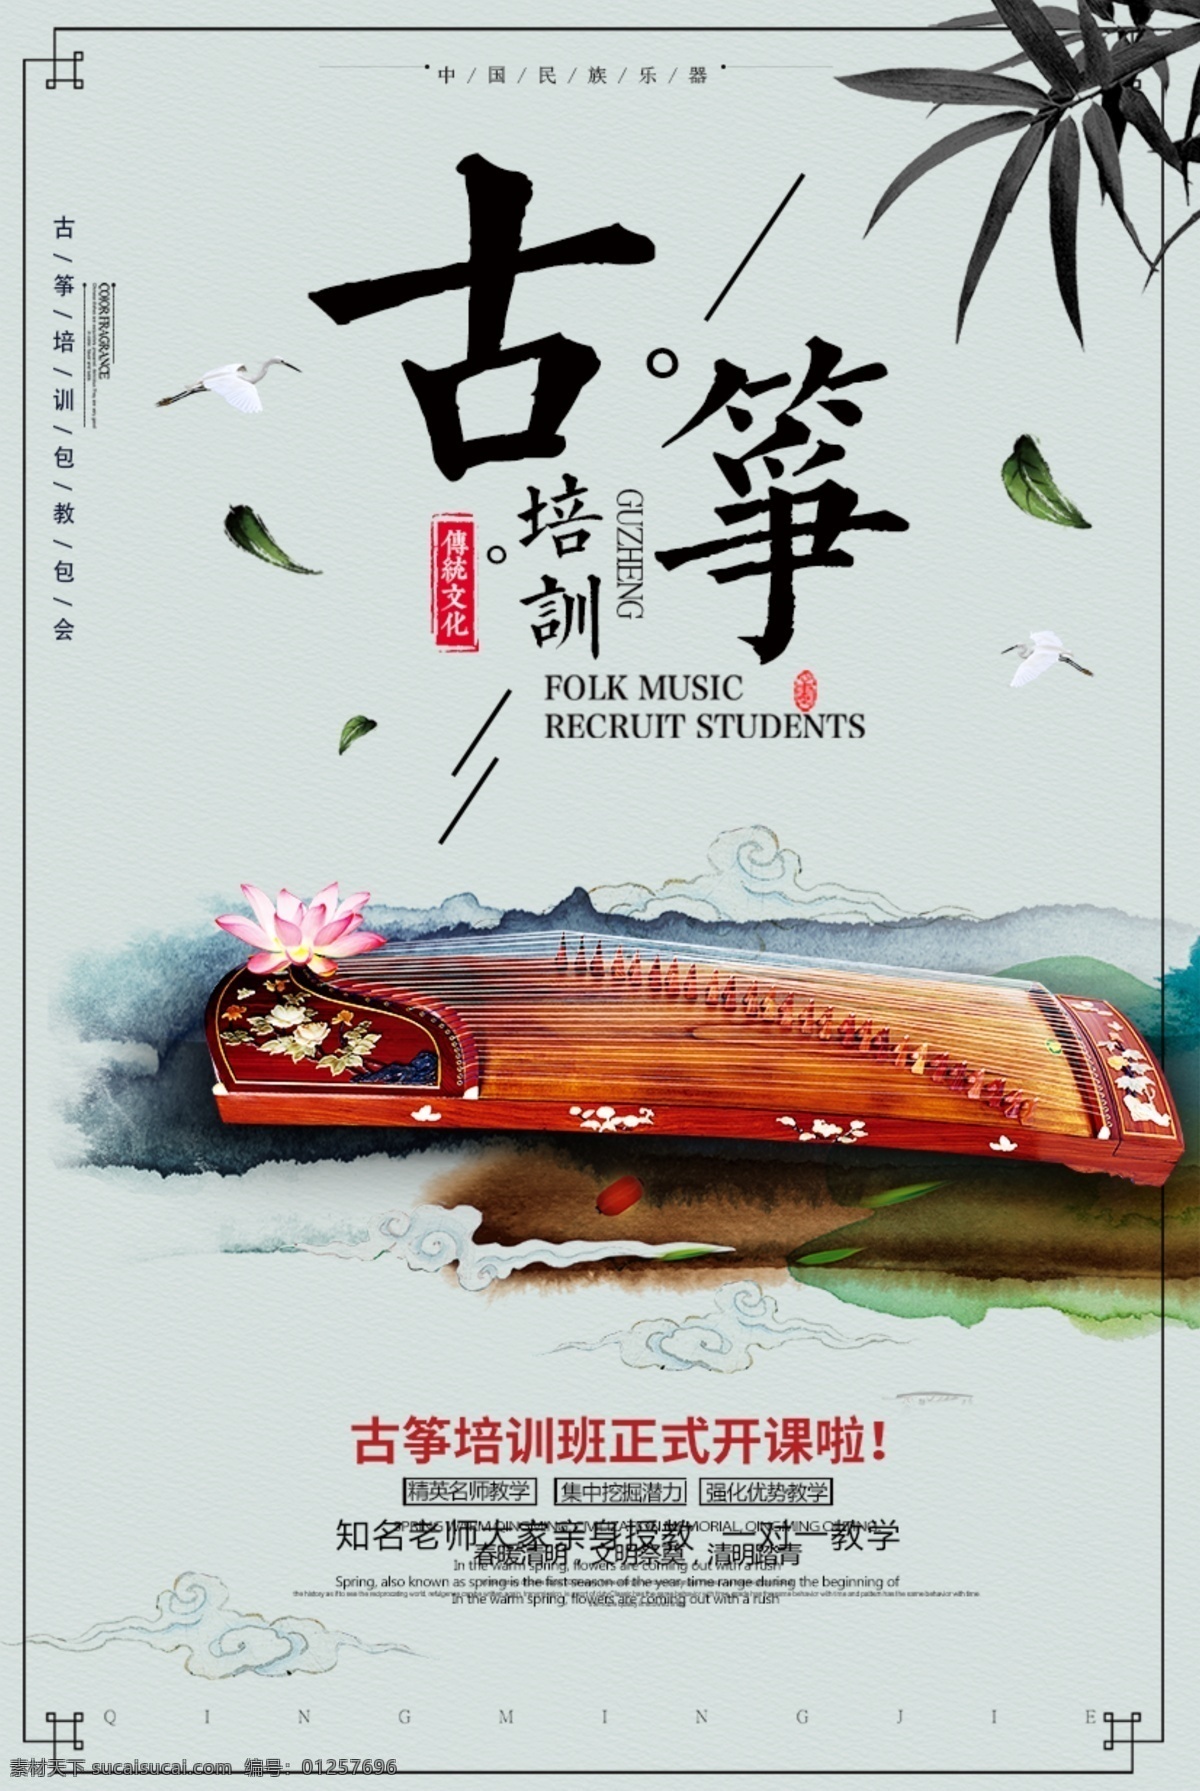 古典 乐器 古筝 培训 海报 简约中国风 古典乐器 古筝培训海报 水墨绘画 培训机构